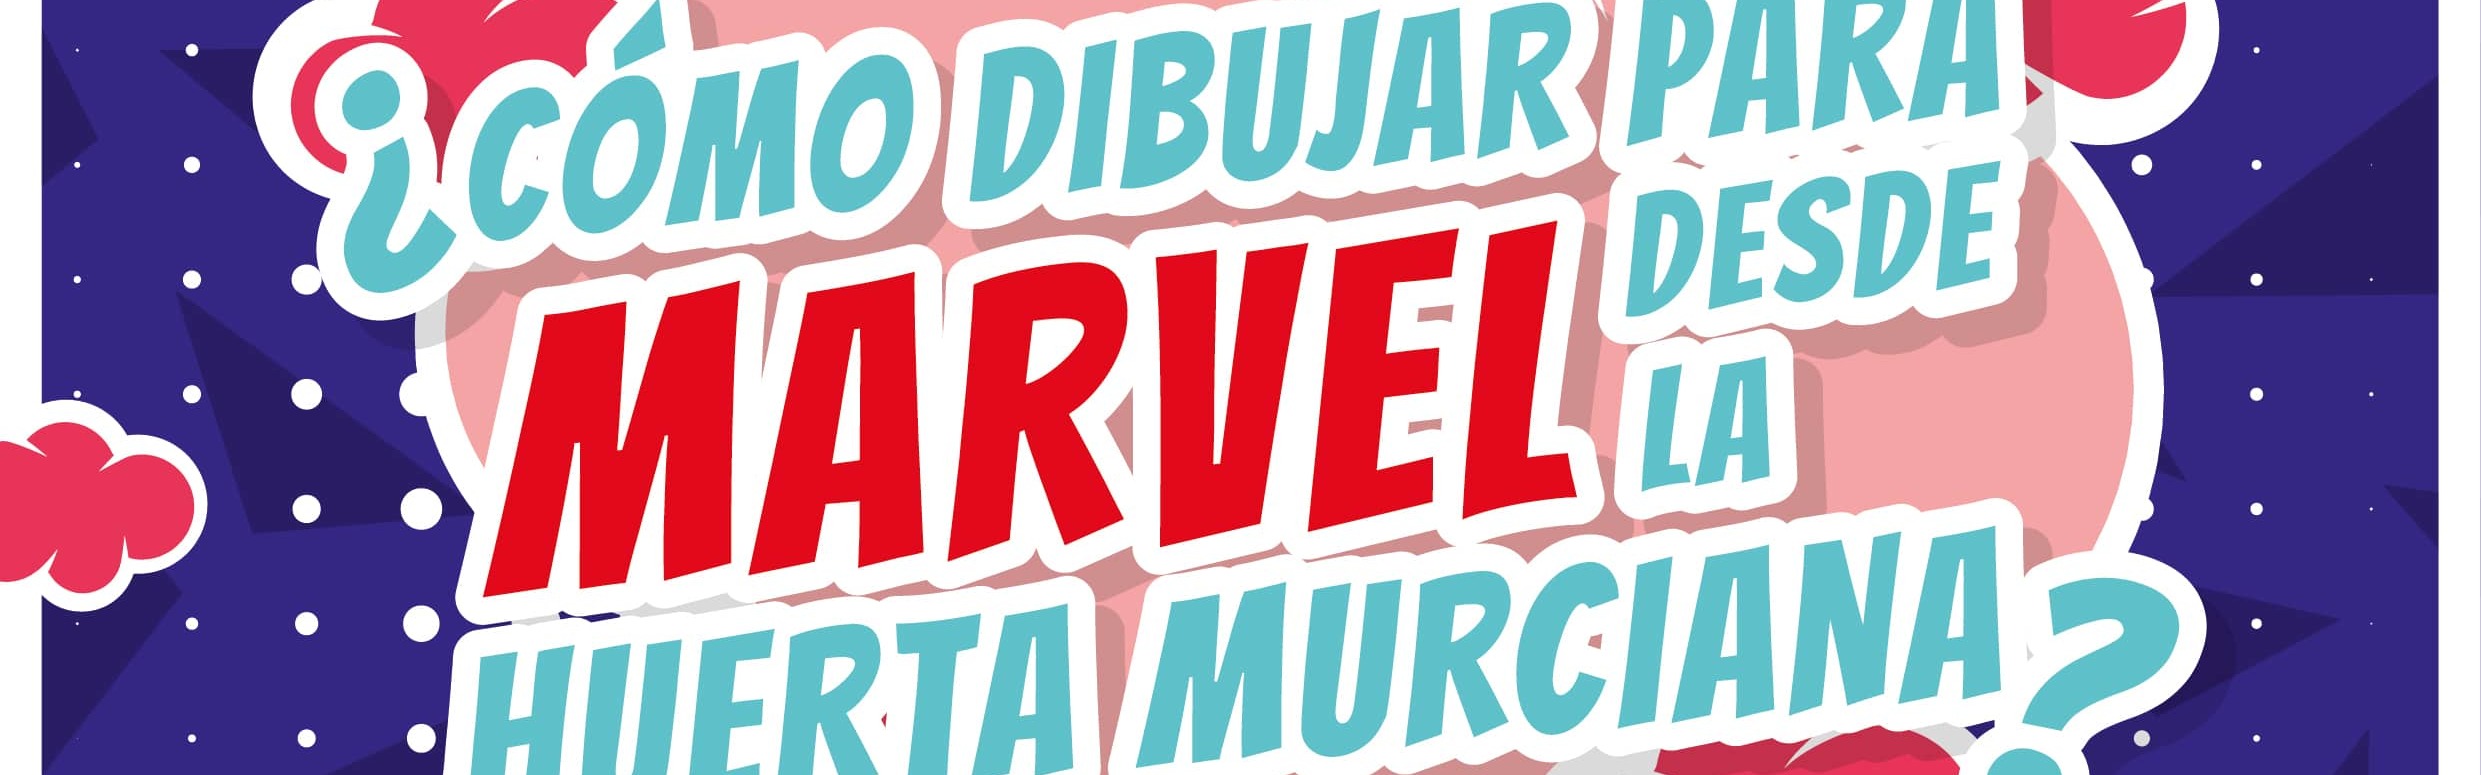 El dibujante de Marvel Salva Espín contará a estudiantes de la Universidad de Murcia su experiencia como emprendedor